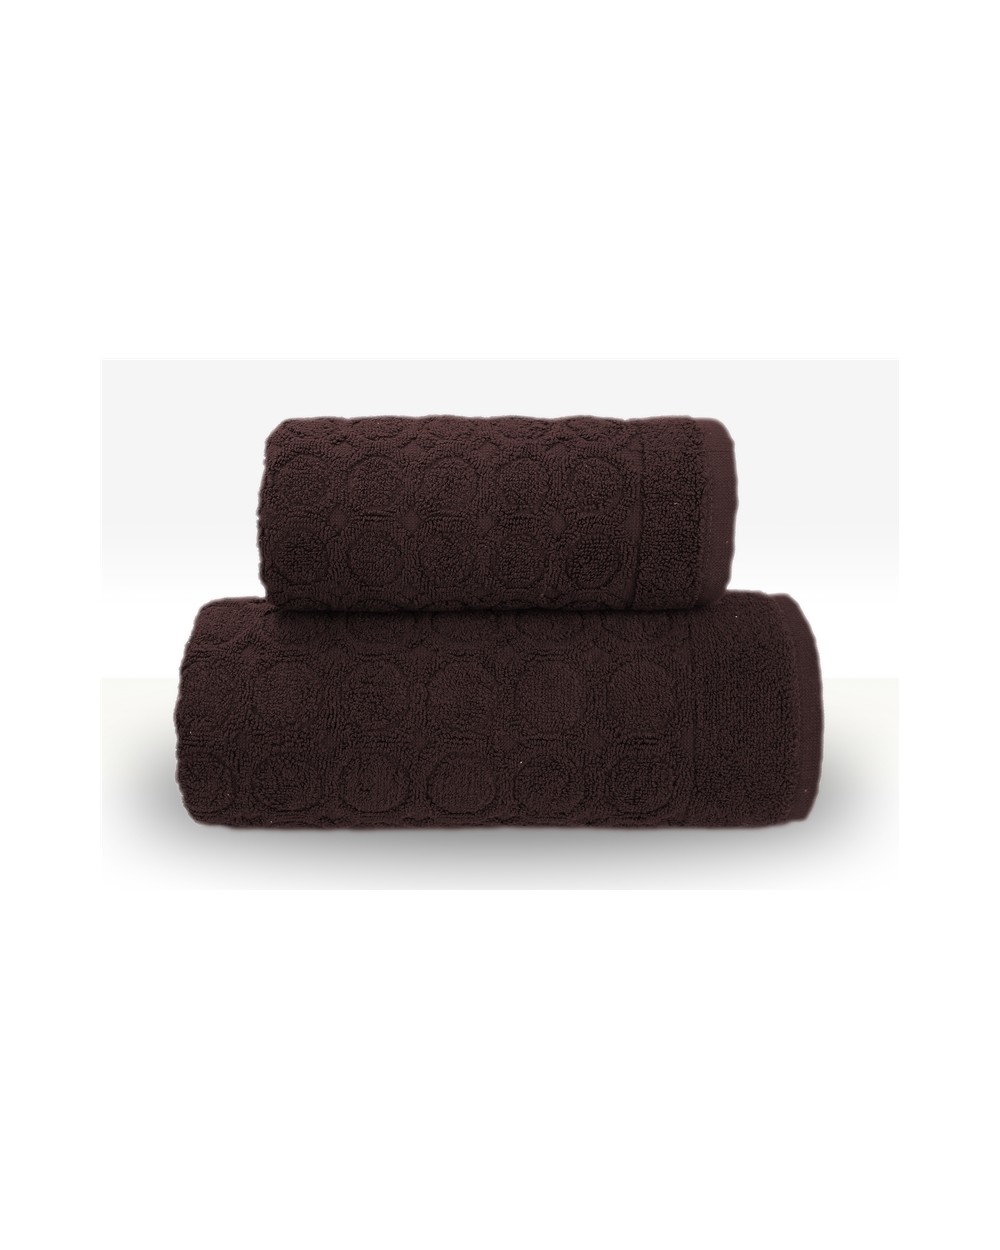 Ręcznik Pepe bawełna 50x100 brązowy